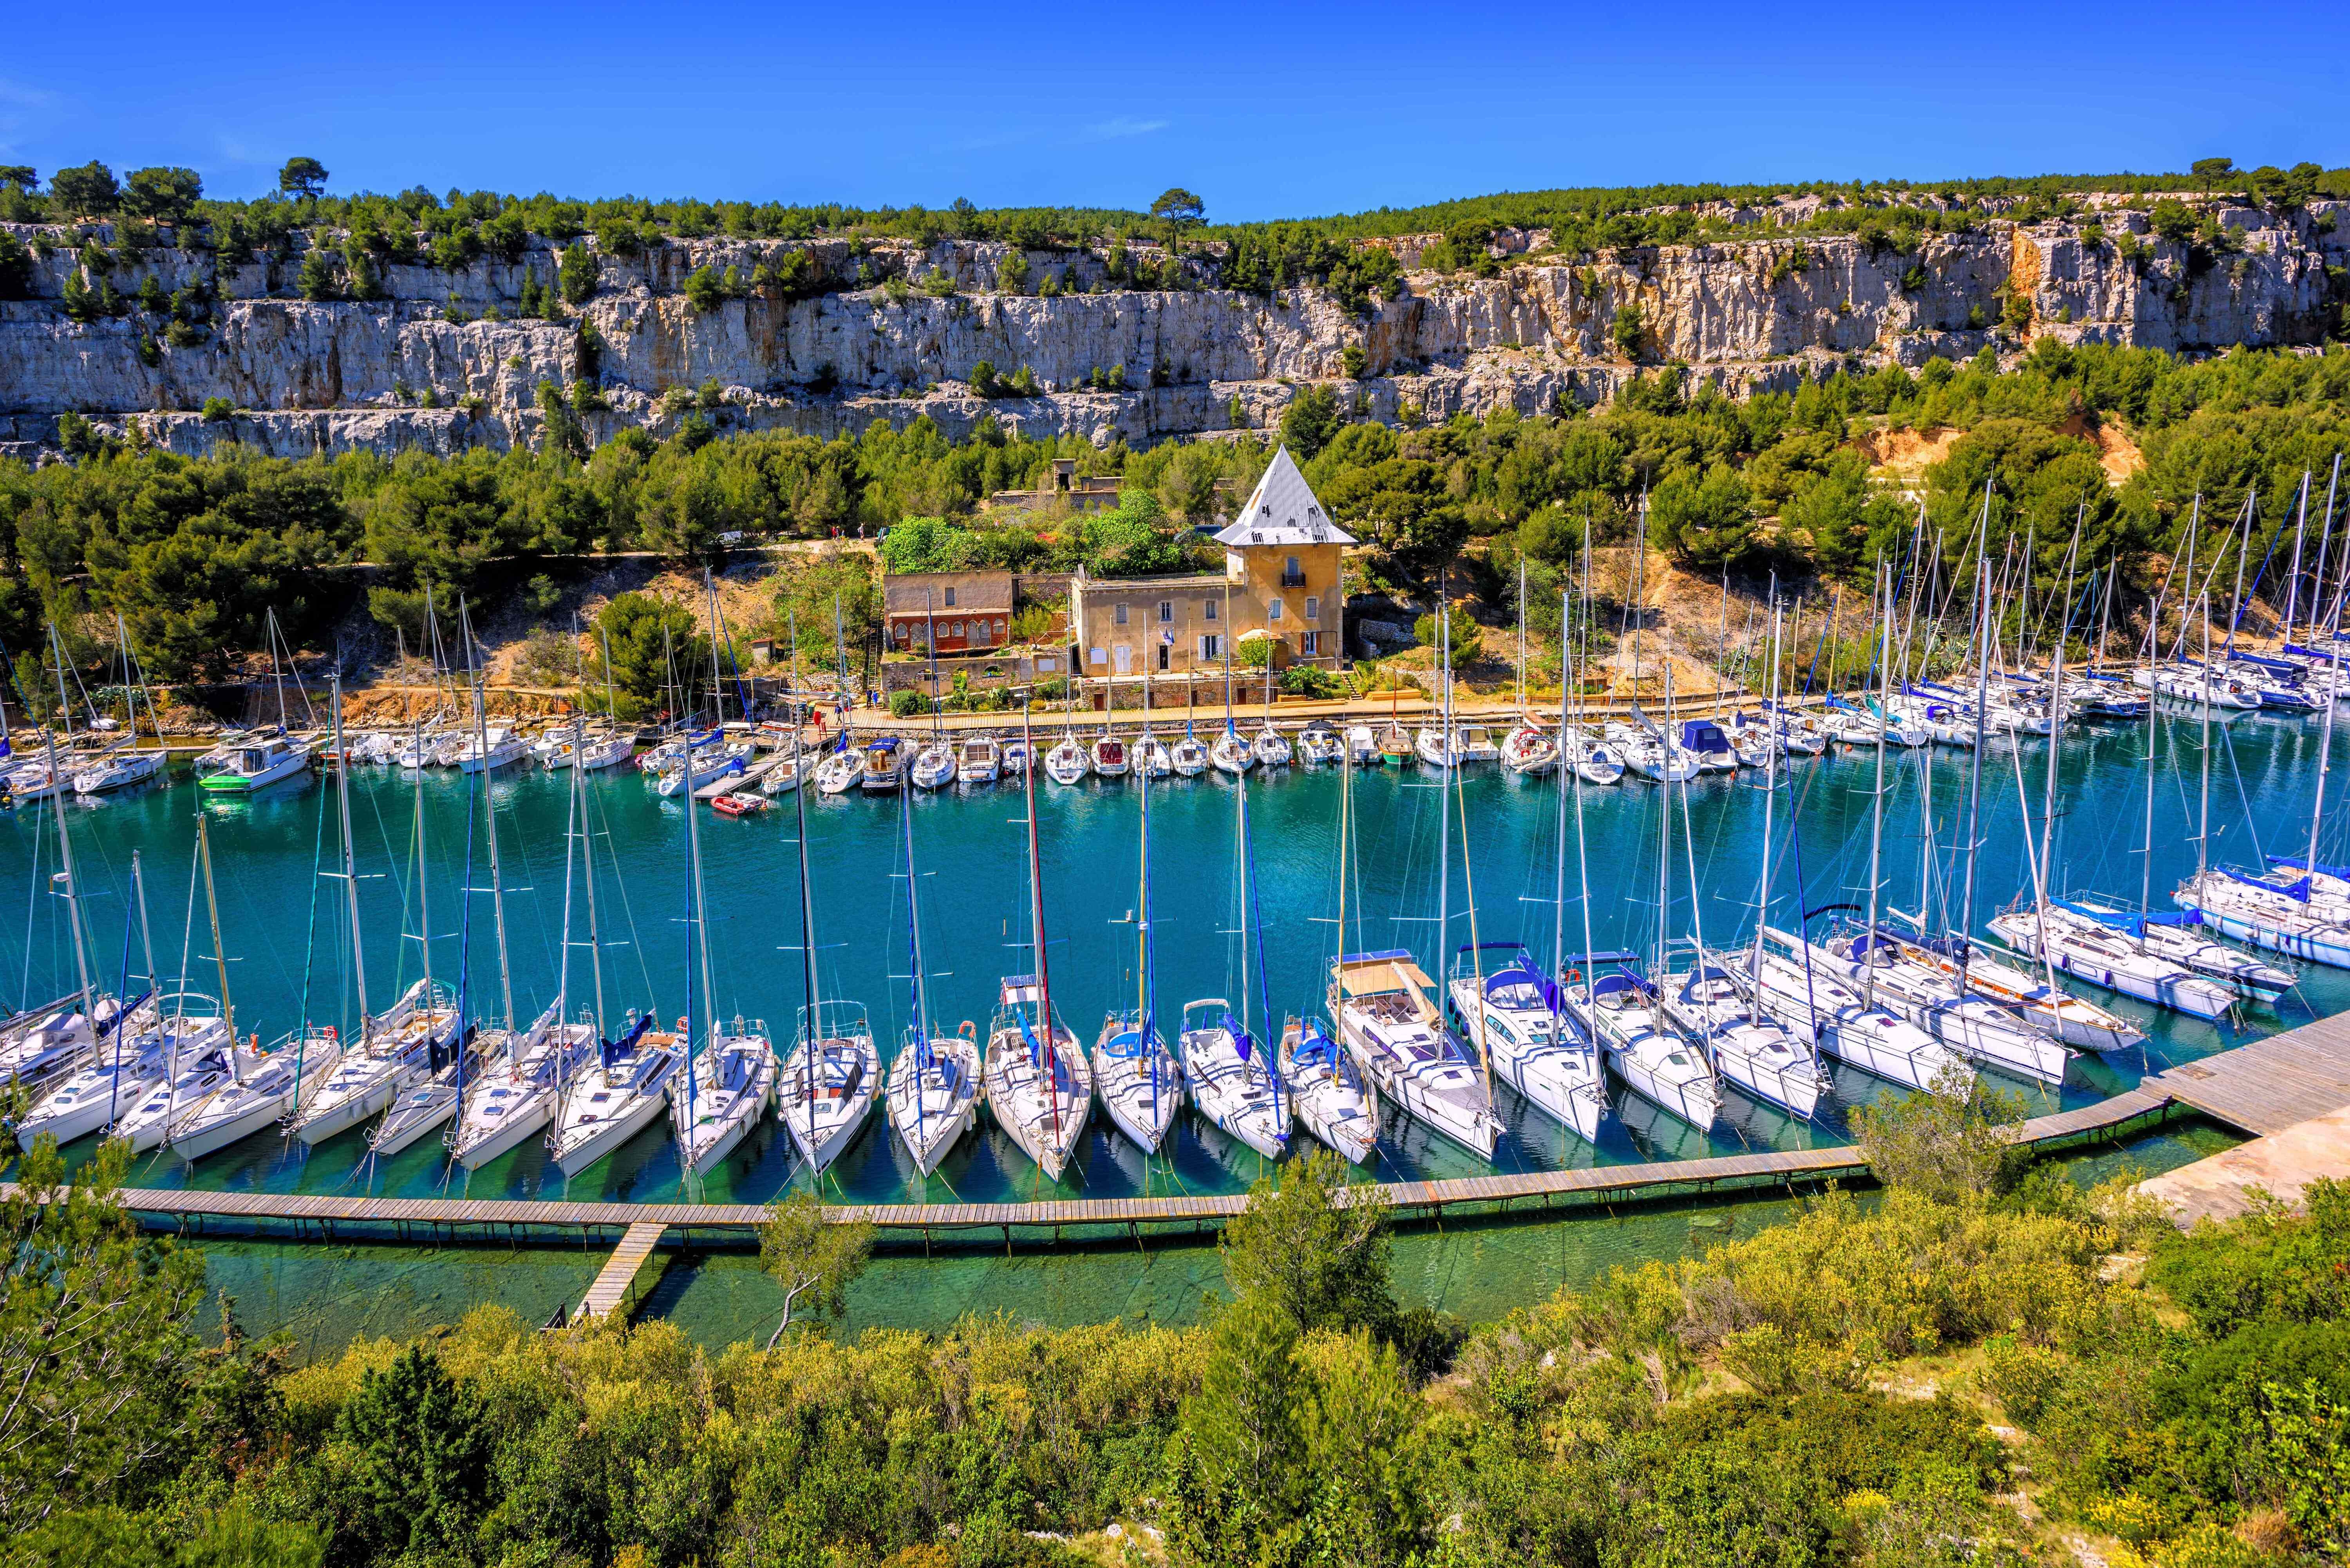 Calanque de Port Miou by Marseille, Provence, France © Boris Stroujko - stock.adobe.com